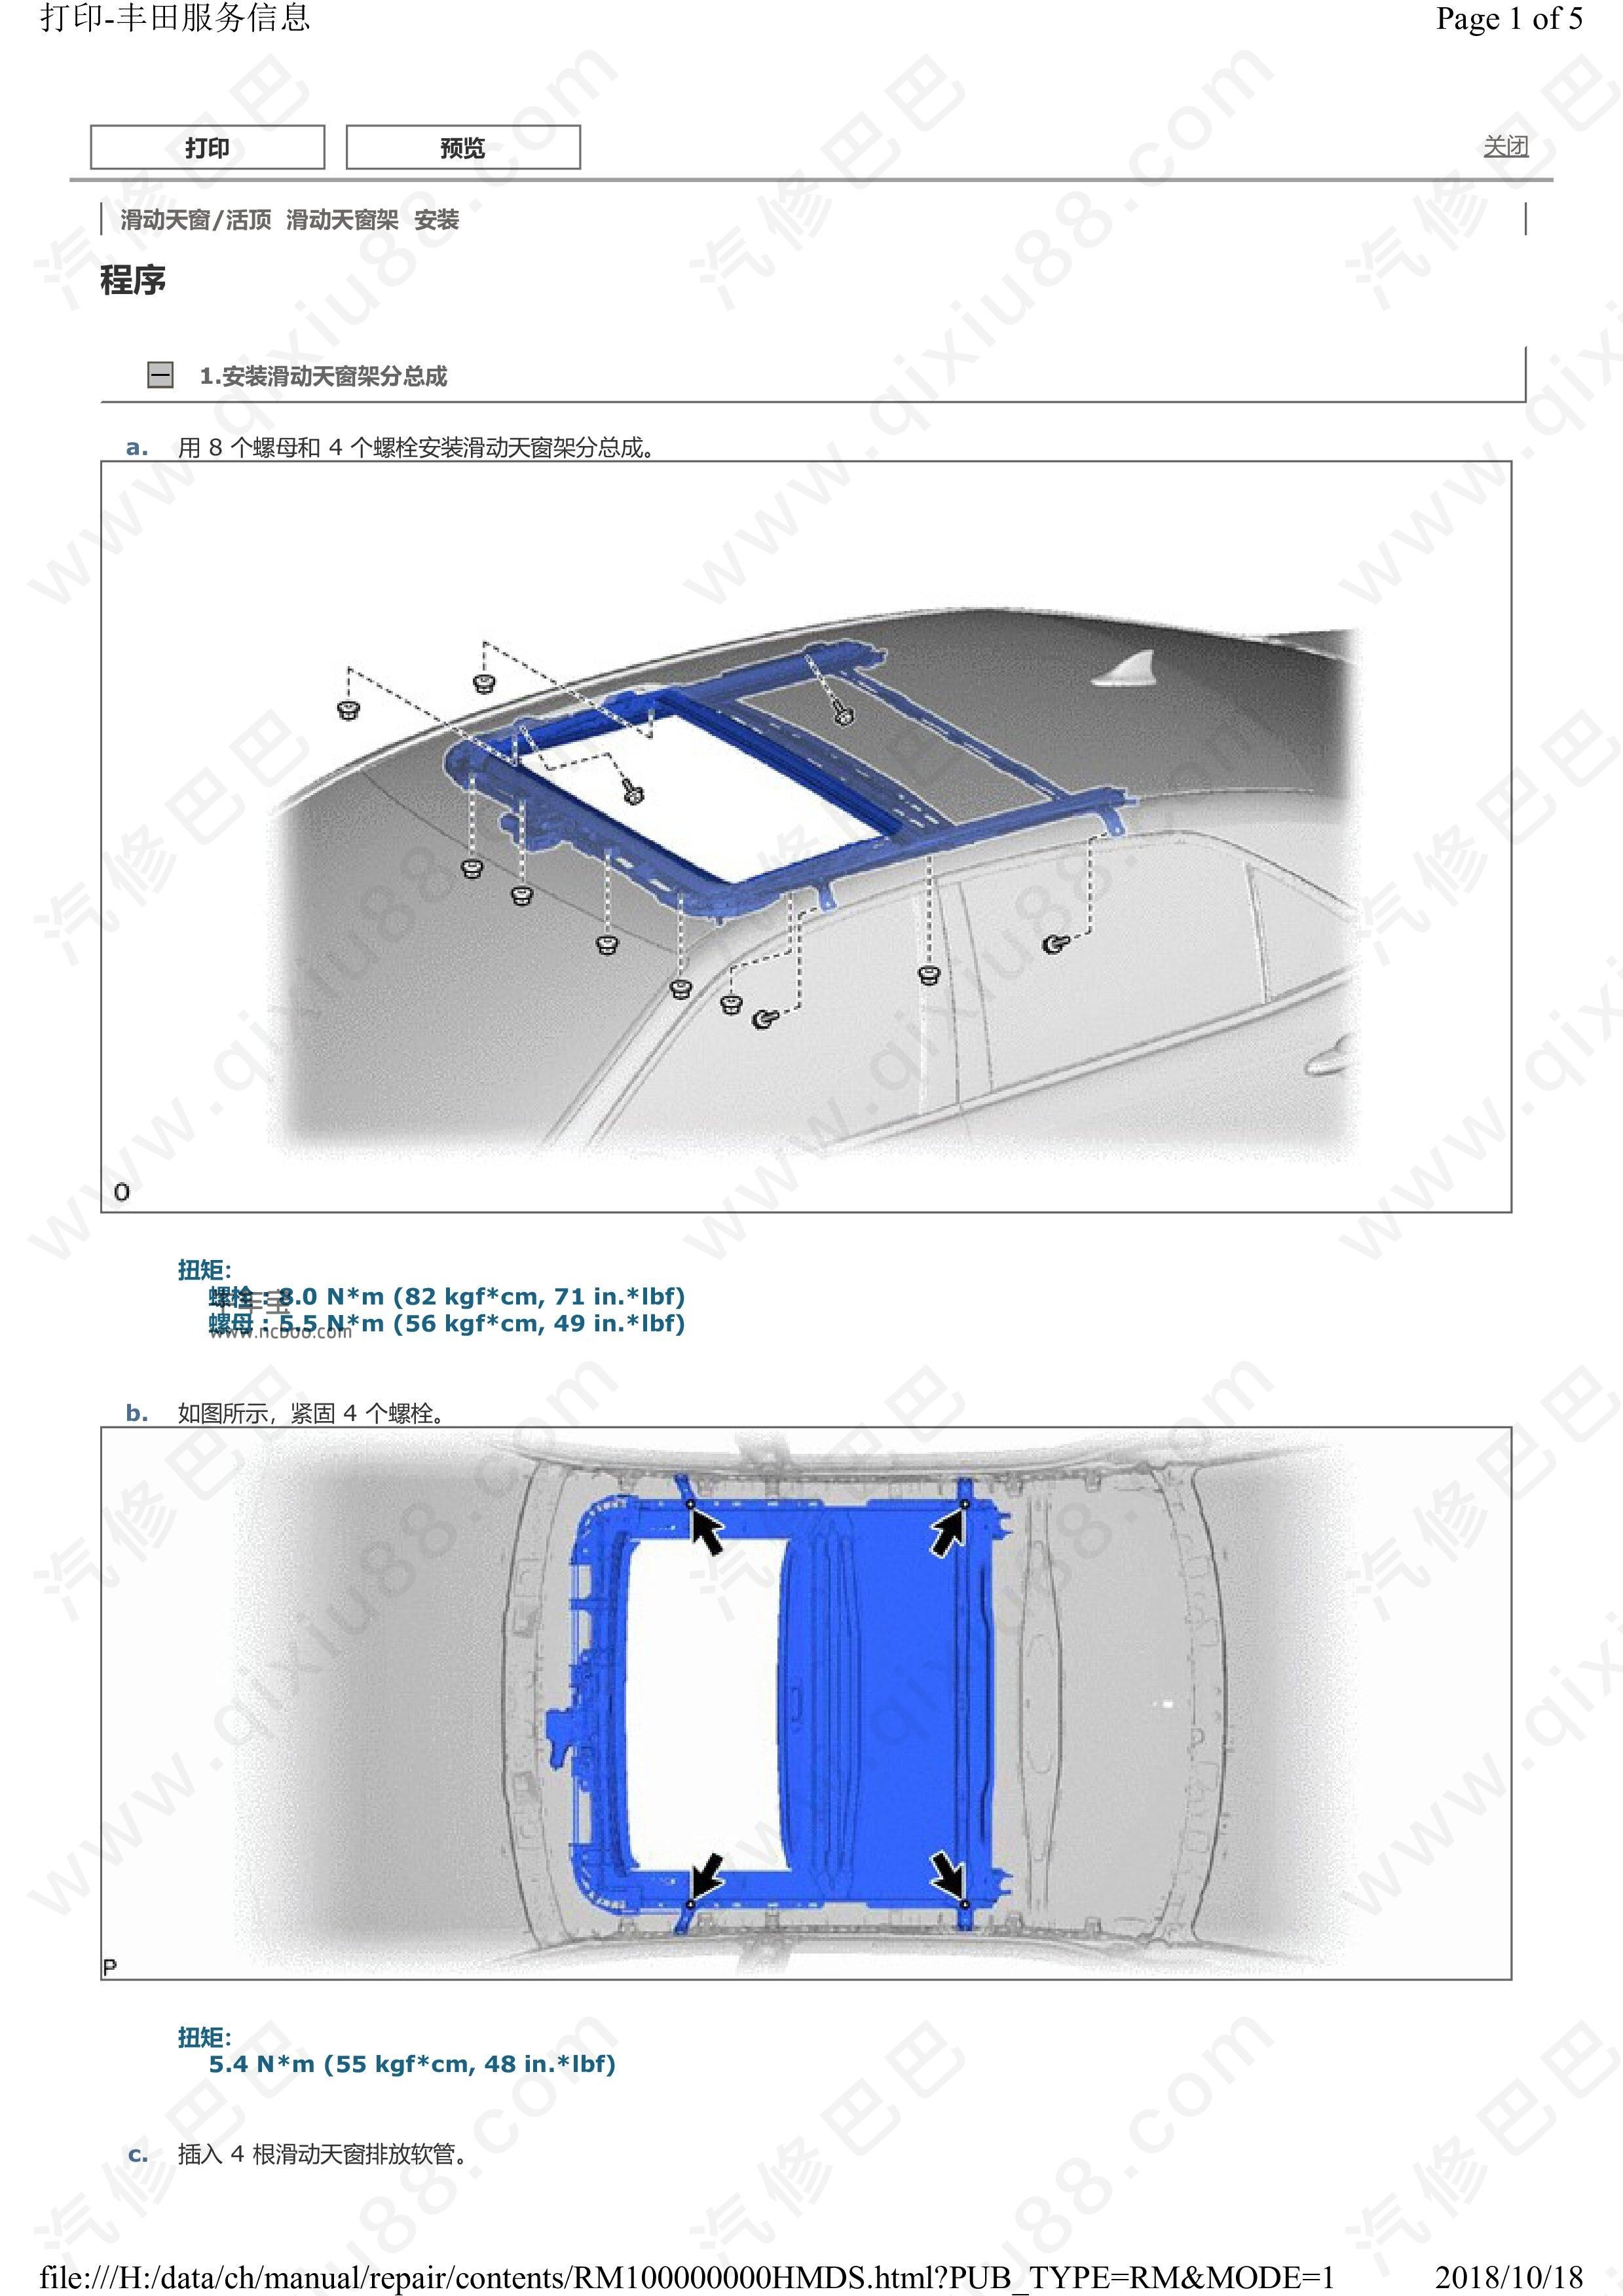 丰田皇冠天窗系统 天窗架拆卸安装维修手册